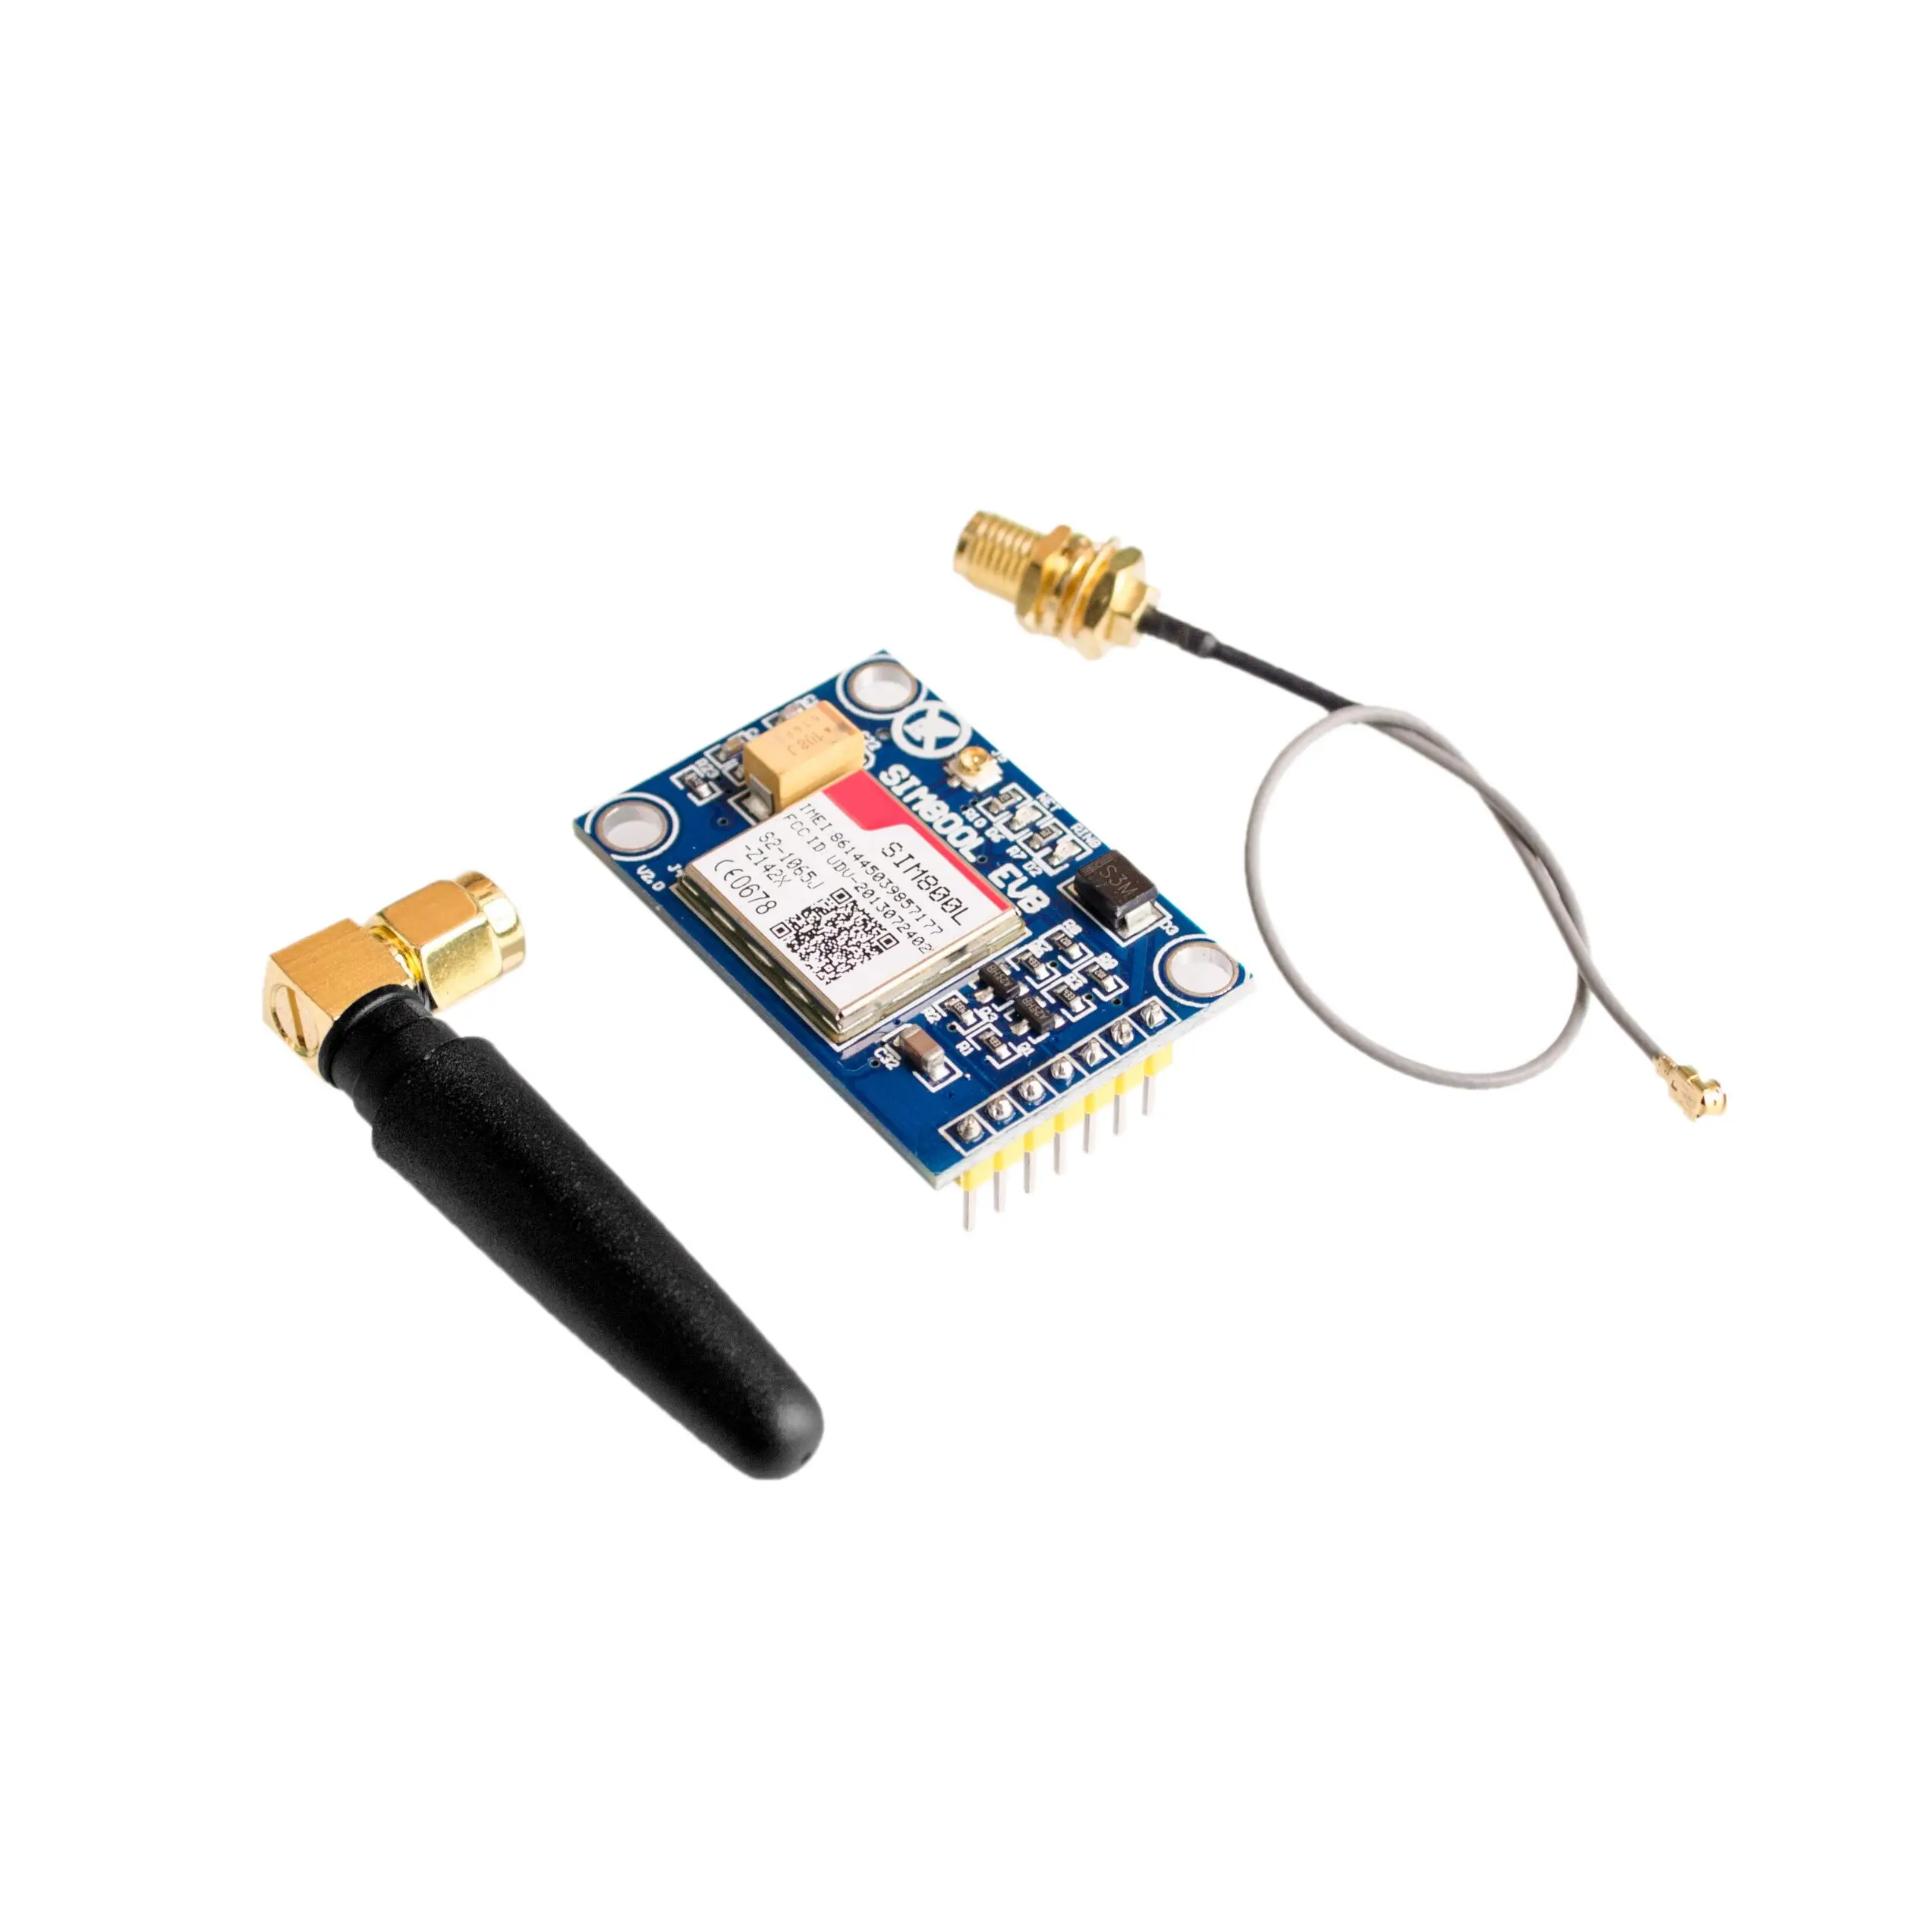 Маленький модуль SIM800L GPRS GSM комплект карта MicroSIM Core BOard Quad-band ttl последовательный порт с антенной для Arduino